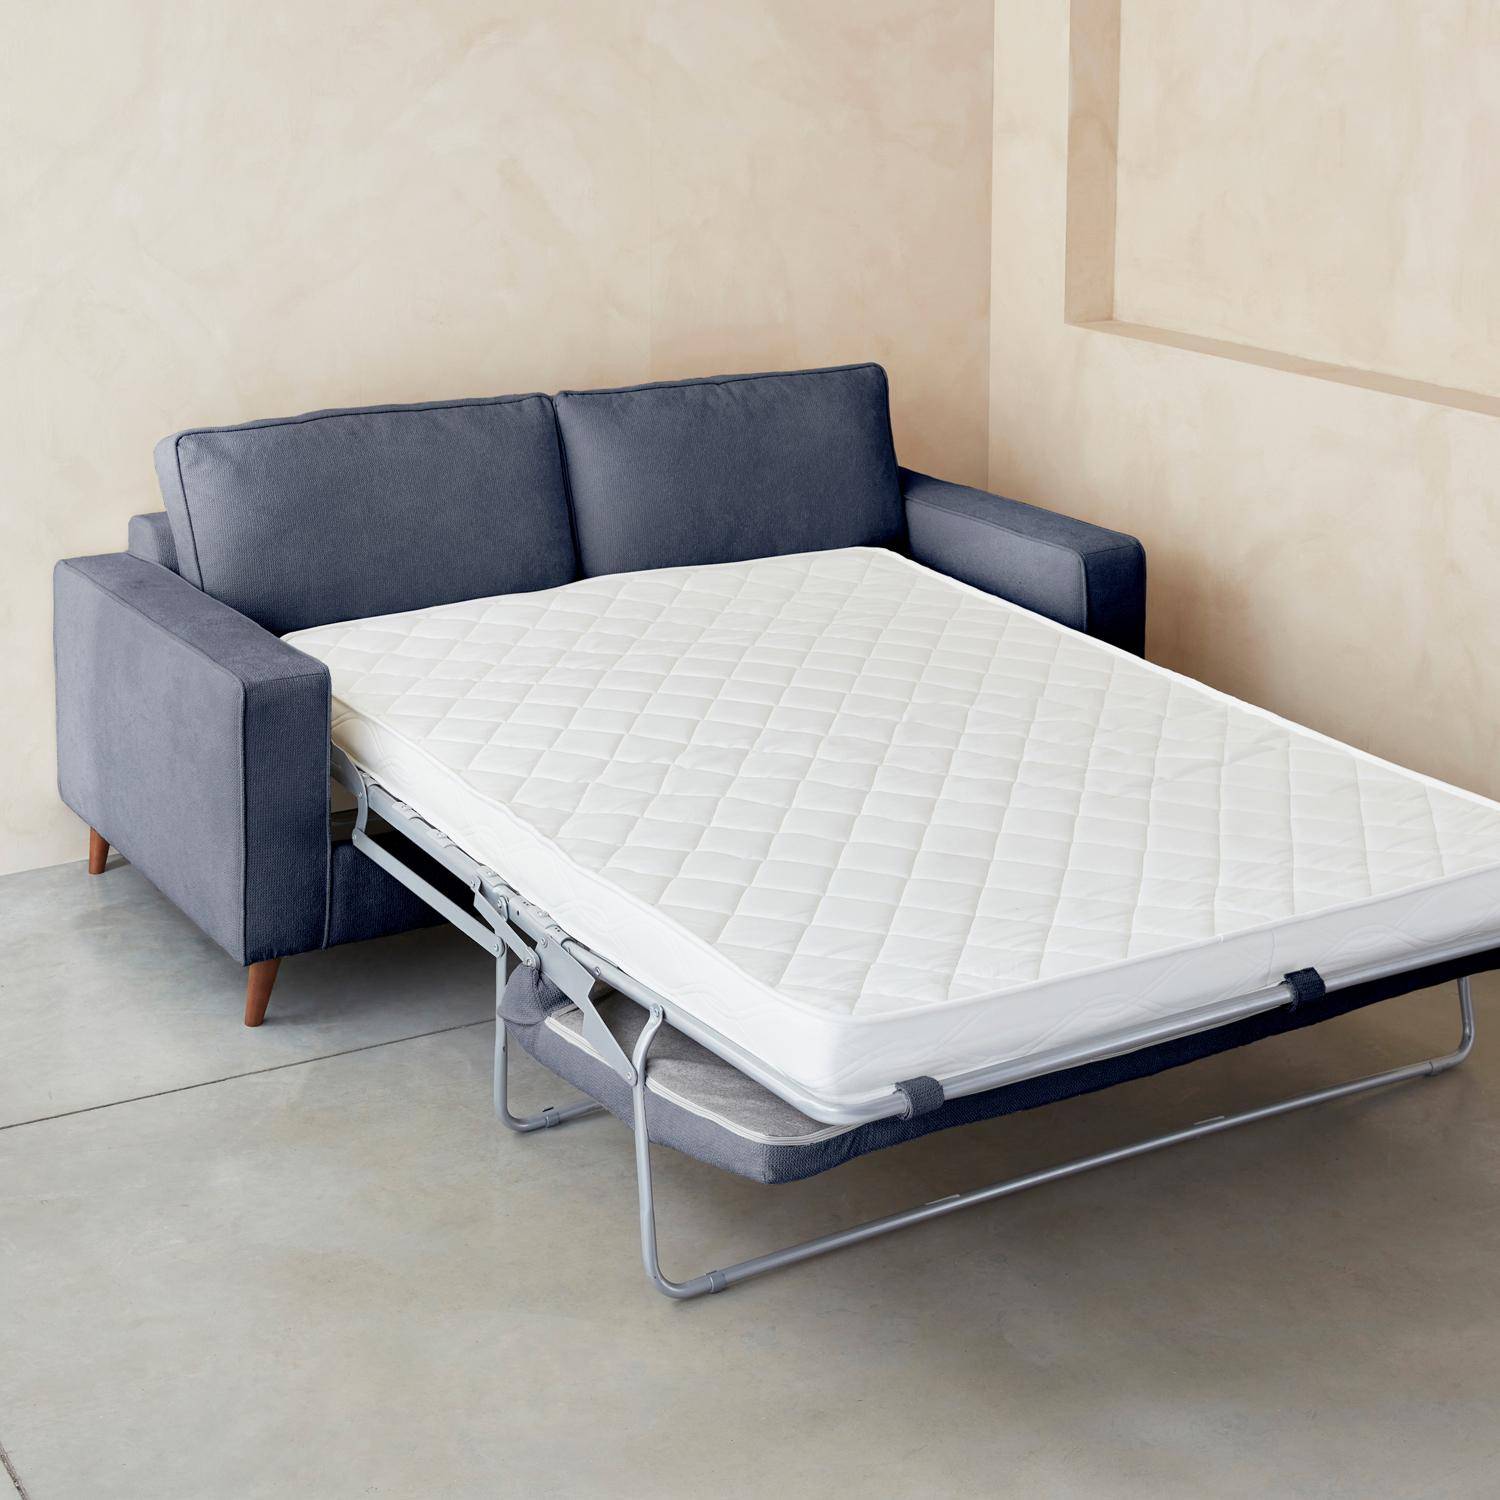 Blauwe 3-zits slaapbank met 12cm dik matras, gemaakt in Frankrijk Photo5